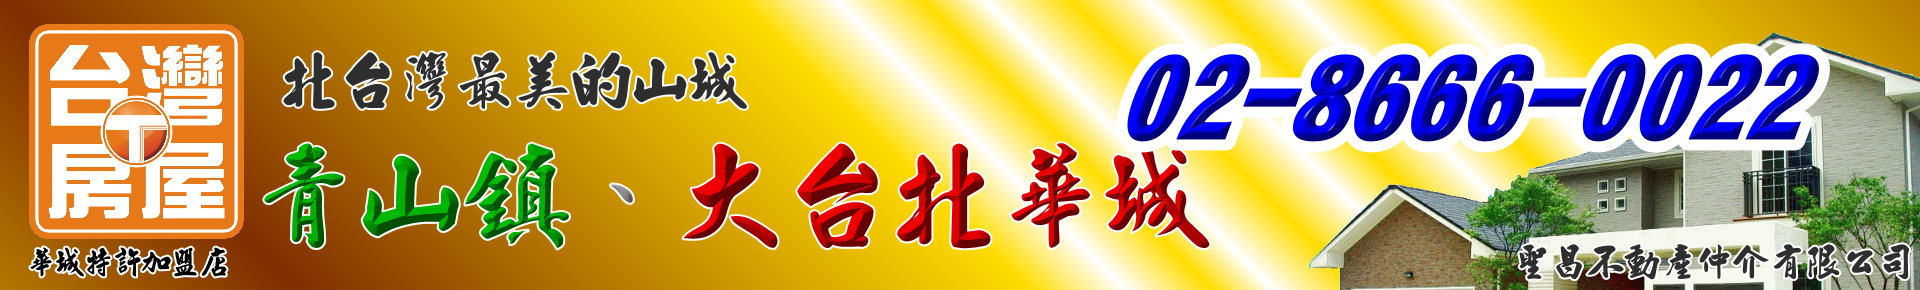 華城一路/平走美景別墅-青山鎮、大台北華城【台灣房屋/銷售團隊】北台灣最美的山城！ logo